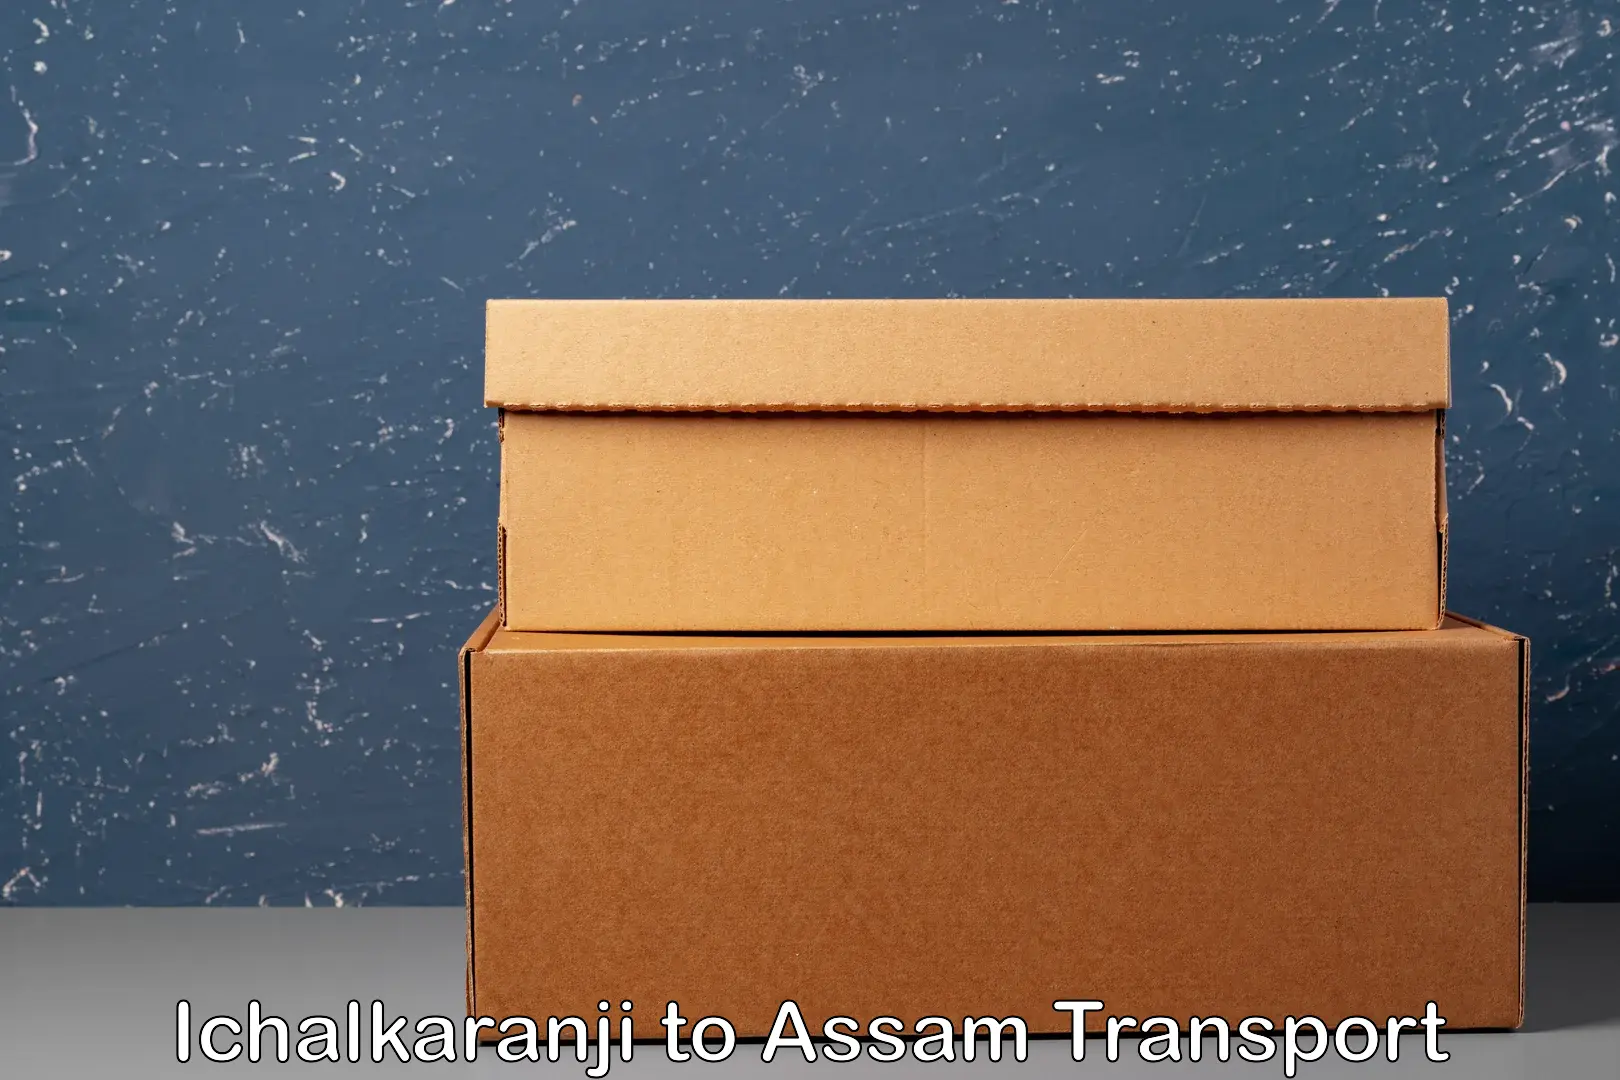 Nearest transport service Ichalkaranji to Assam